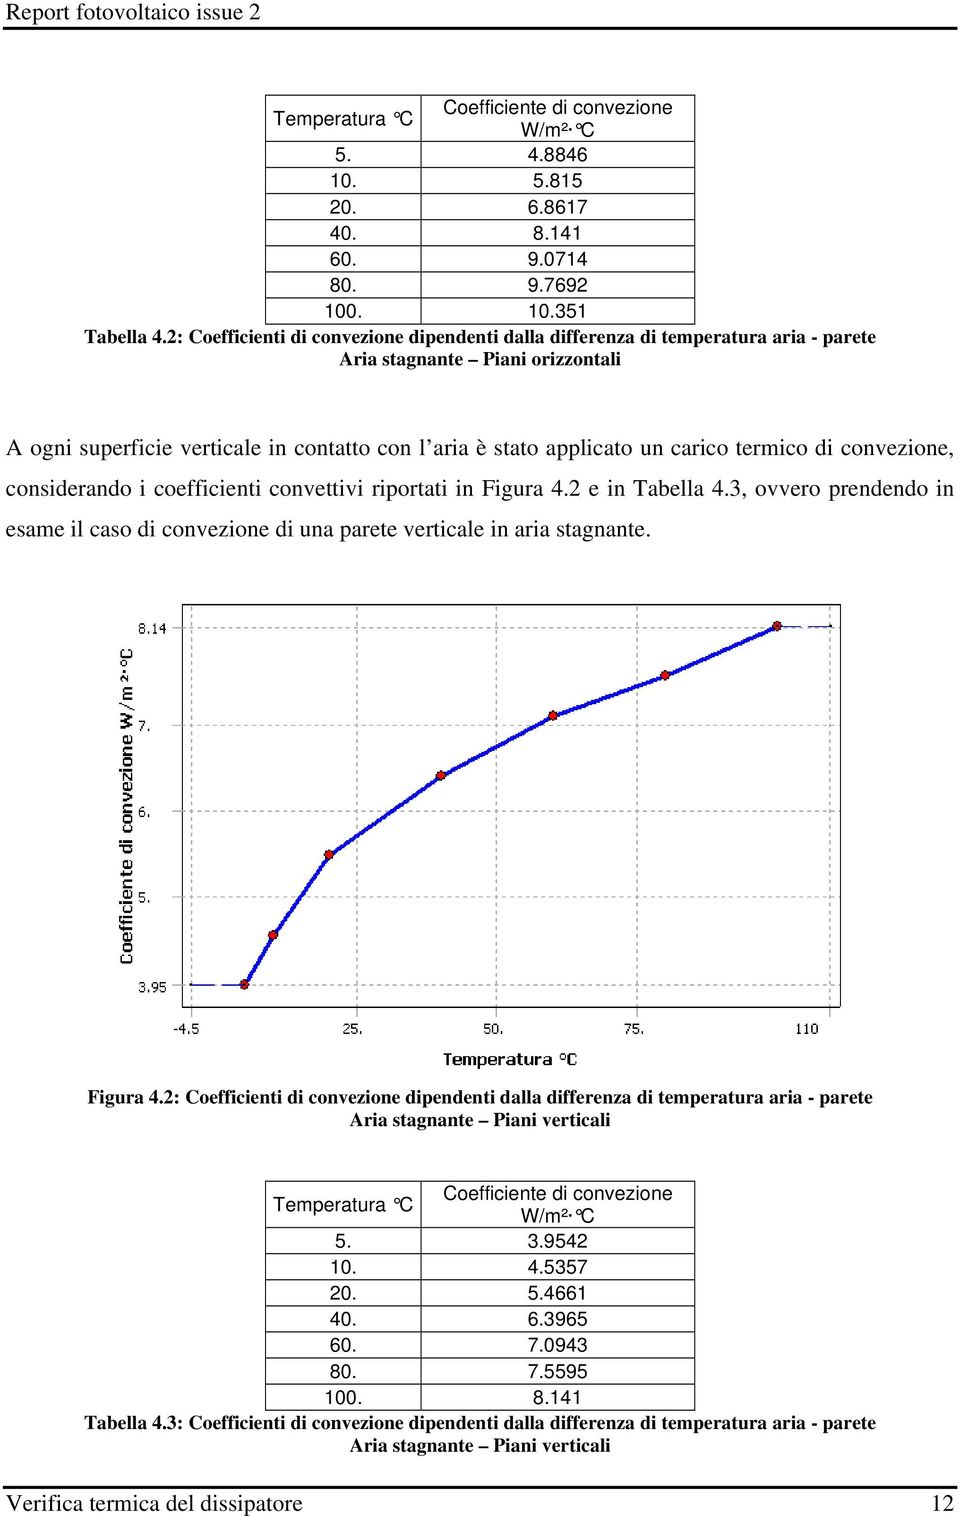 termico di convezione, considerando i coefficienti convettivi riportati in Figura 4.2 e in Tabella 4.3, ovvero prendendo in esame il caso di convezione di una parete verticale in aria stagnante.